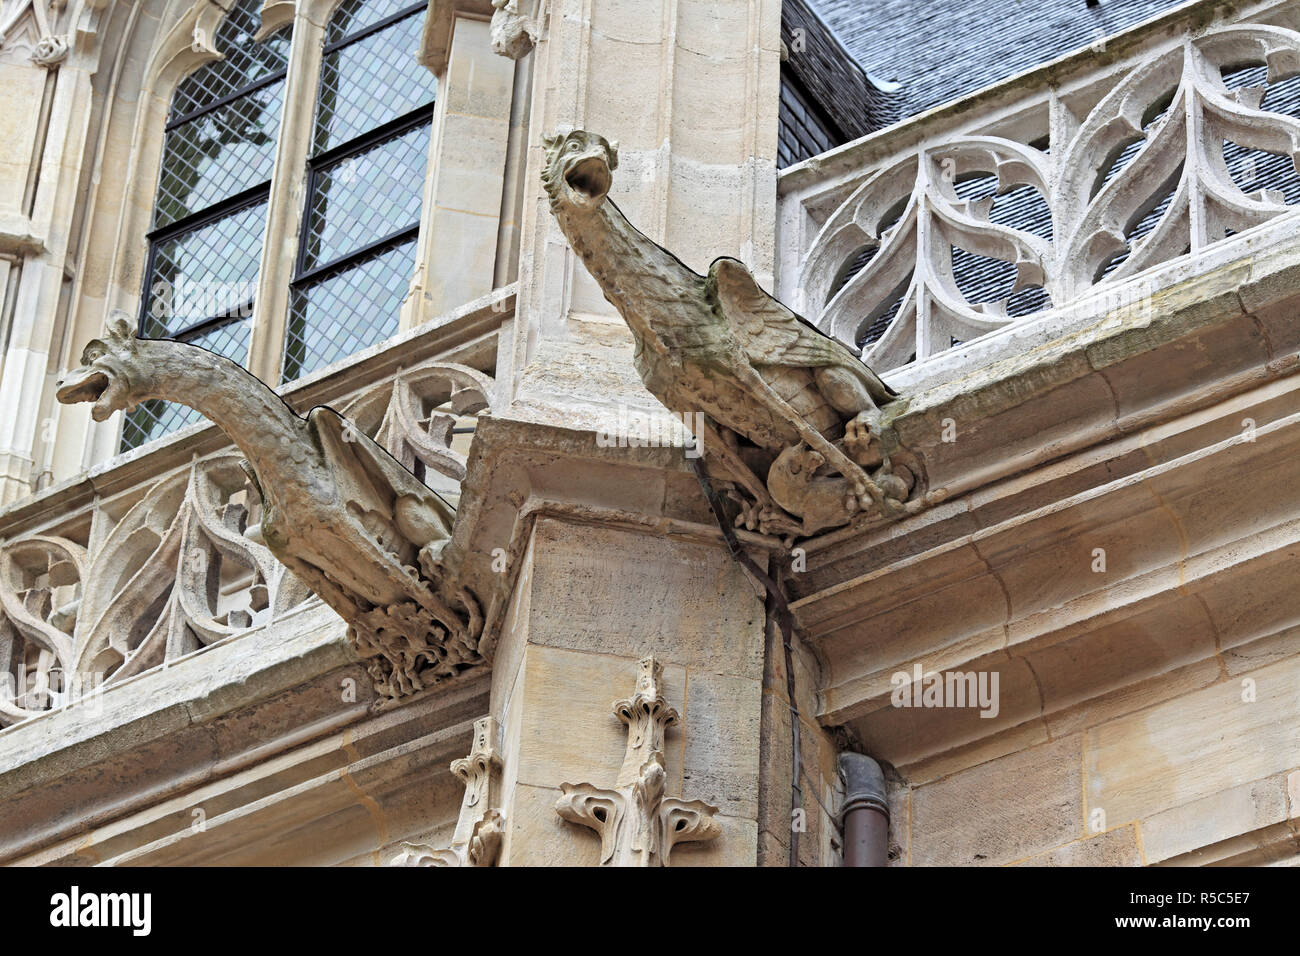 Palais de Justice, Rouen, Seine-Maritime department, Upper Normandy, France Stock Photo